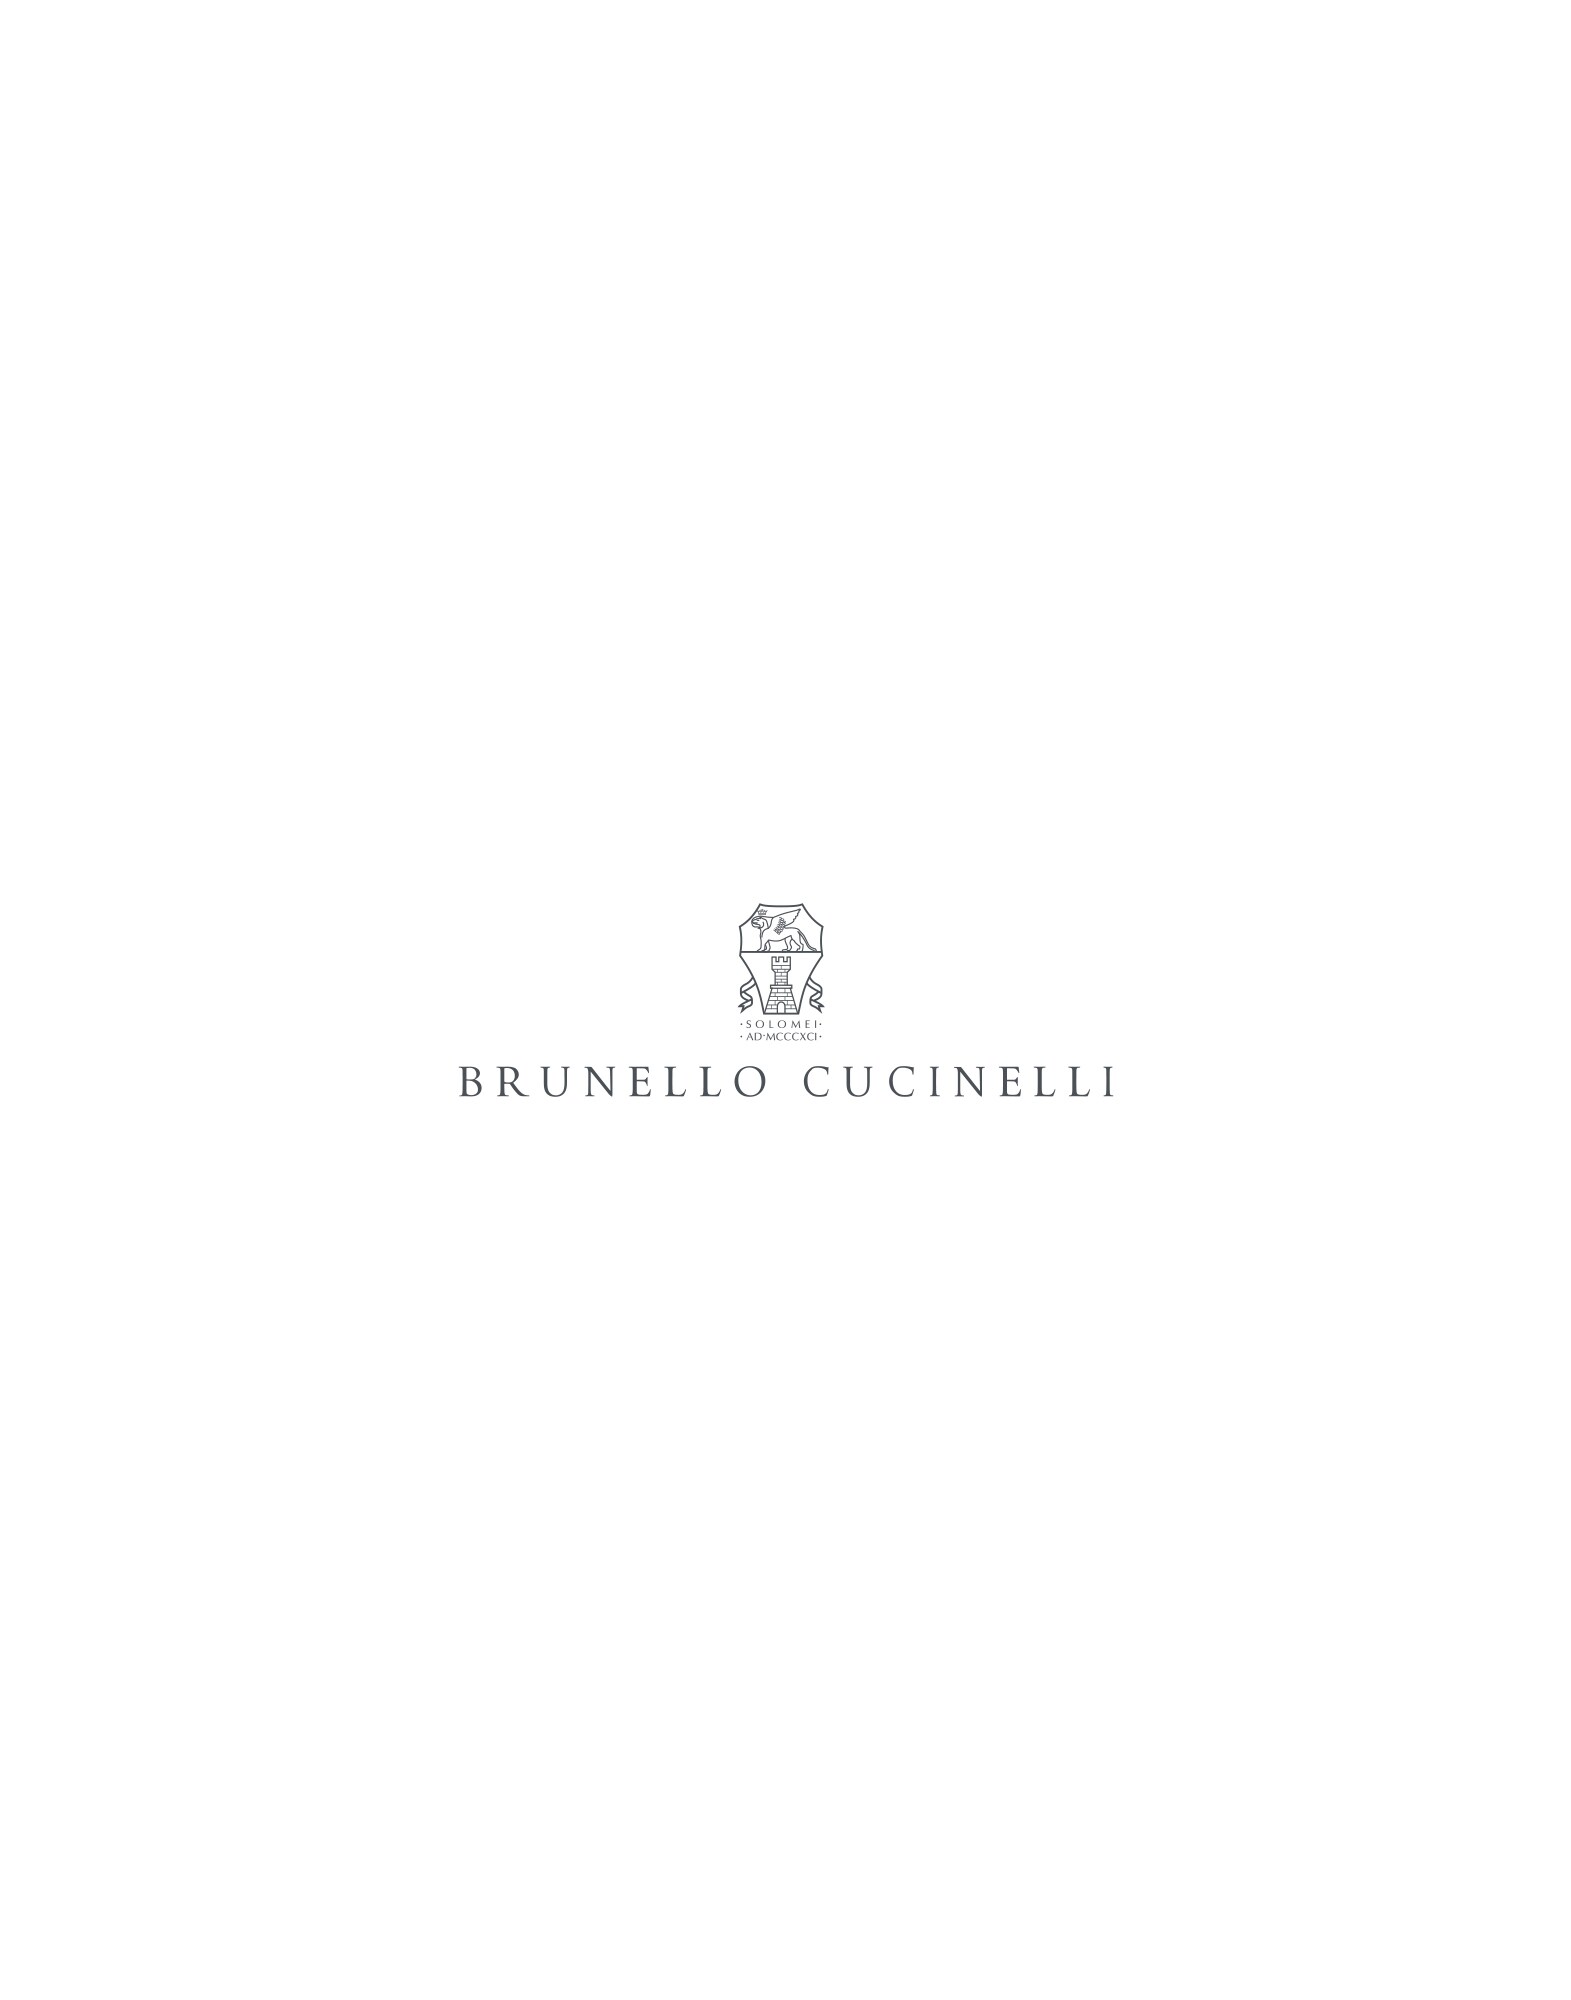 Plate set Lessivè Lifestyle -
                        Brunello Cucinelli 